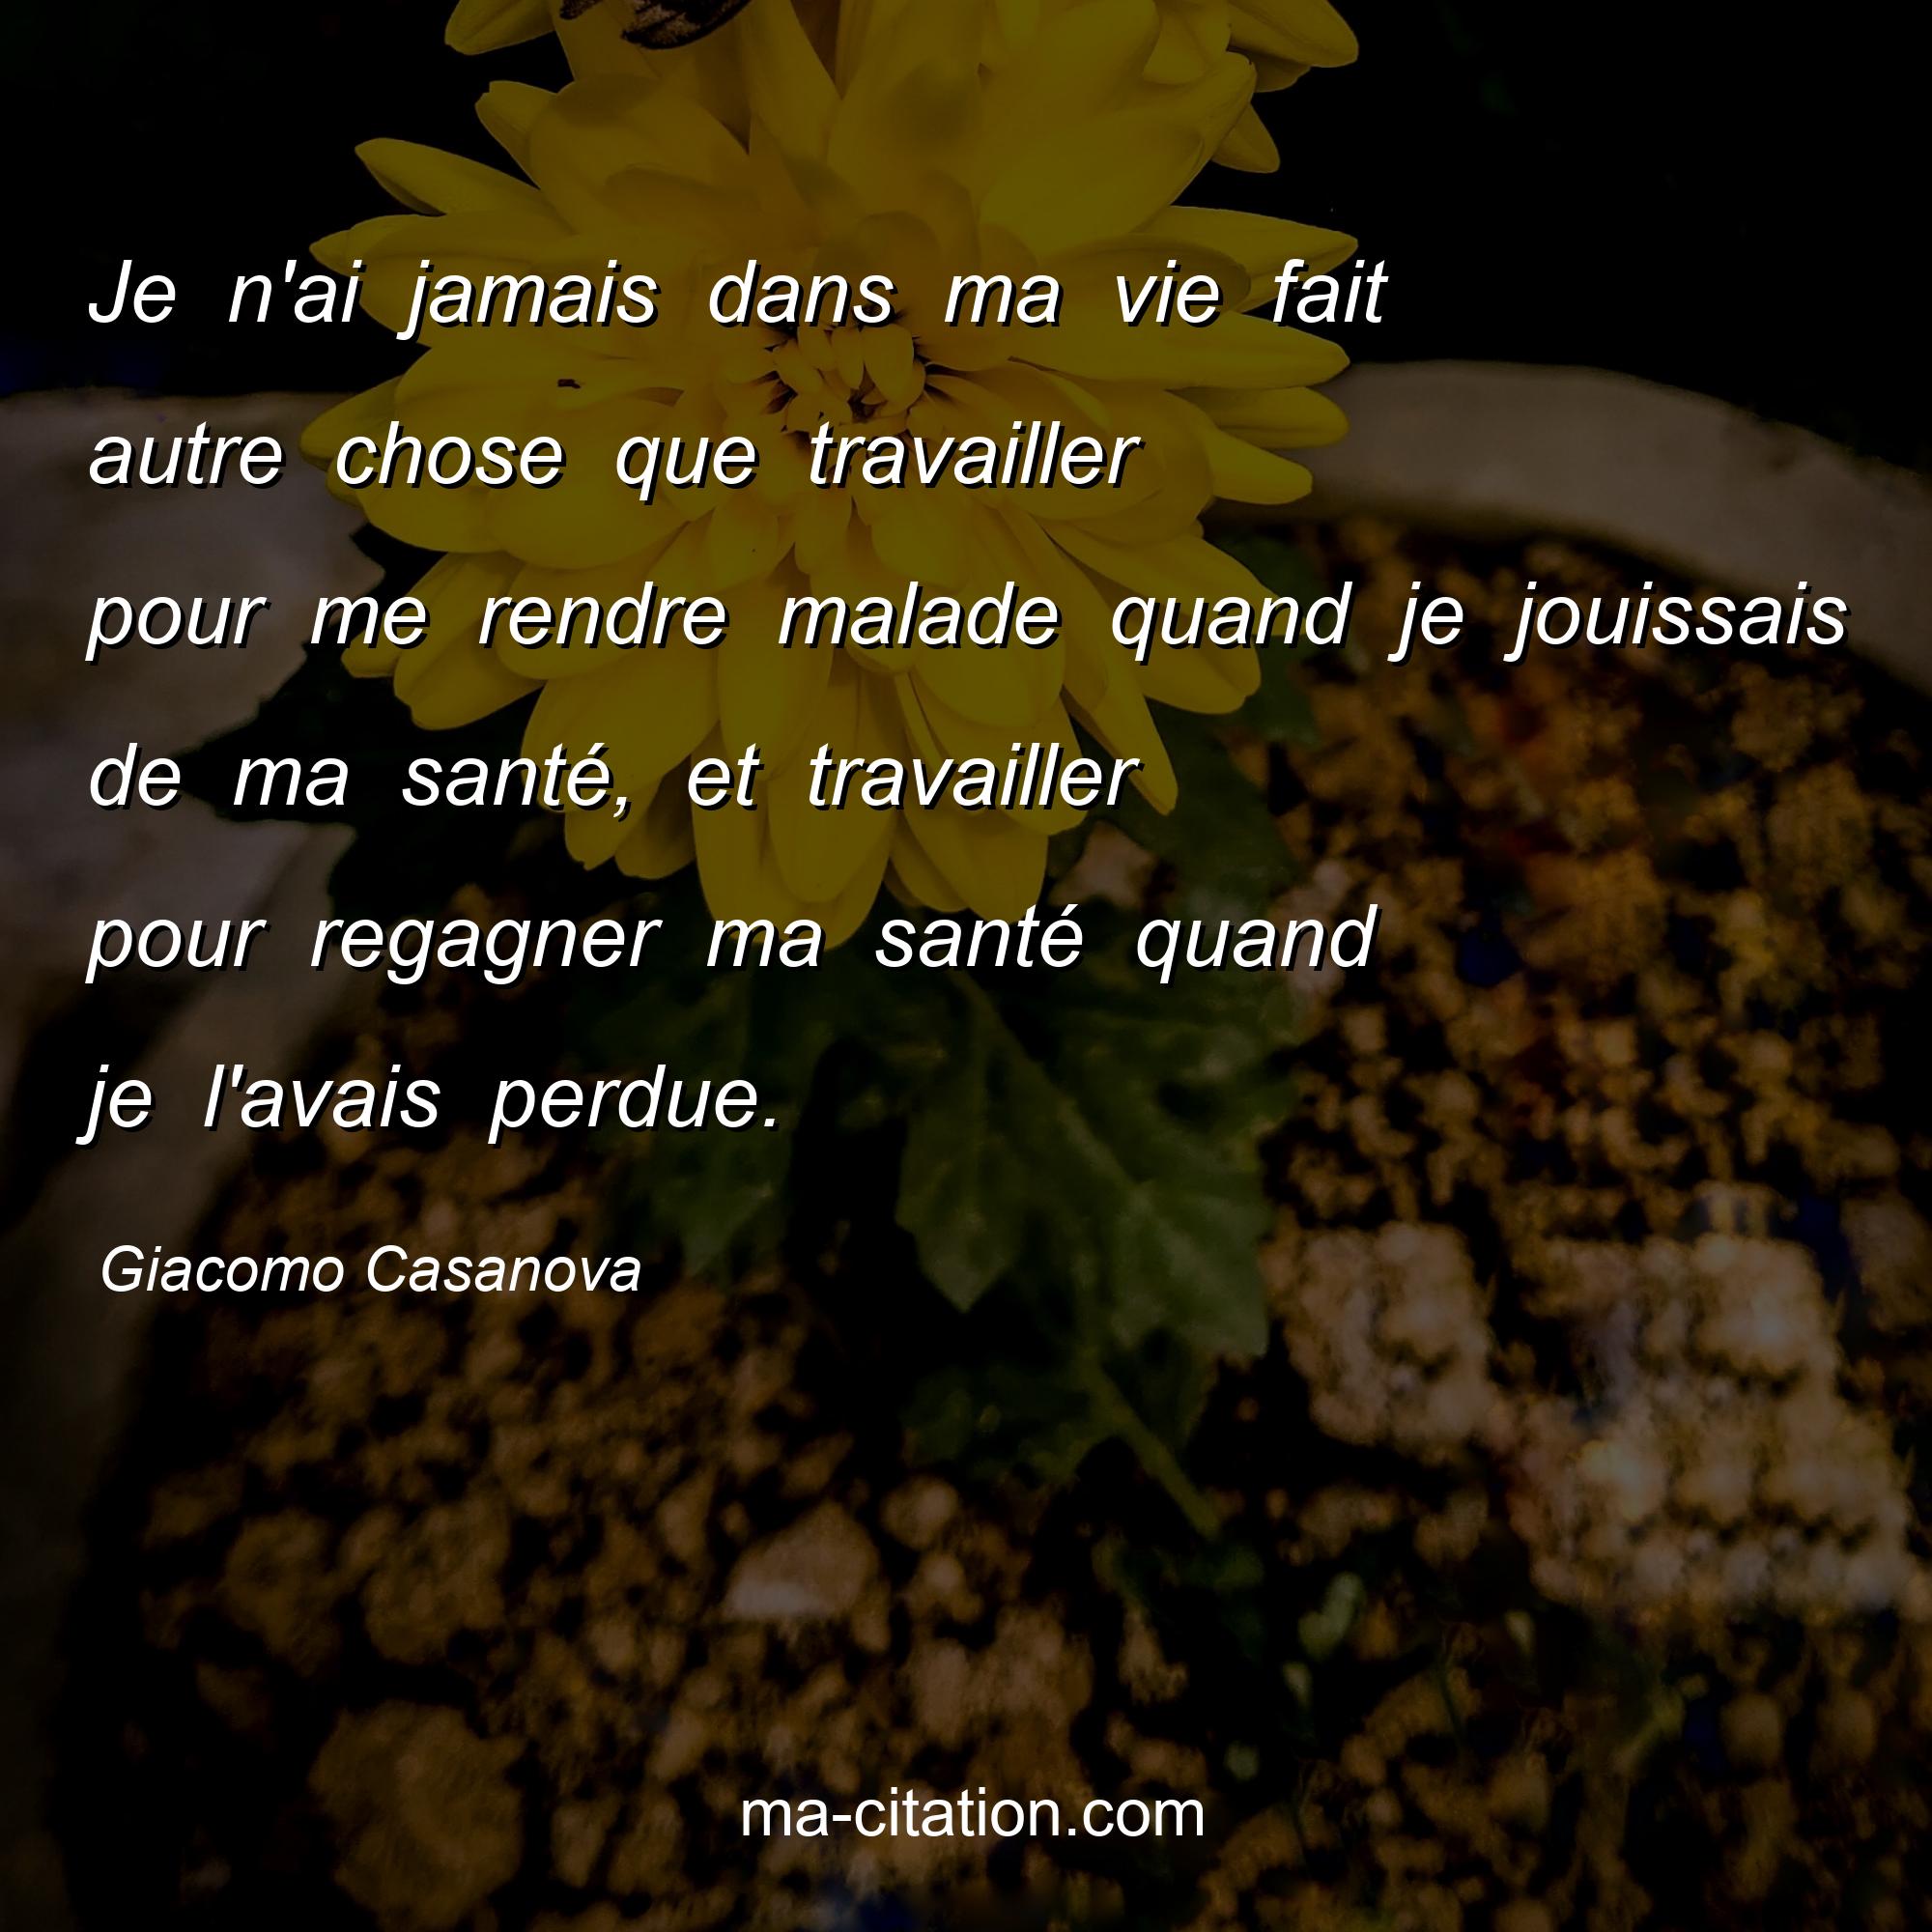 Giacomo Casanova : Je n'ai jamais dans ma vie fait autre chose que travailler pour me rendre malade quand je jouissais de ma santé, et travailler pour regagner ma santé quand je l'avais perdue.